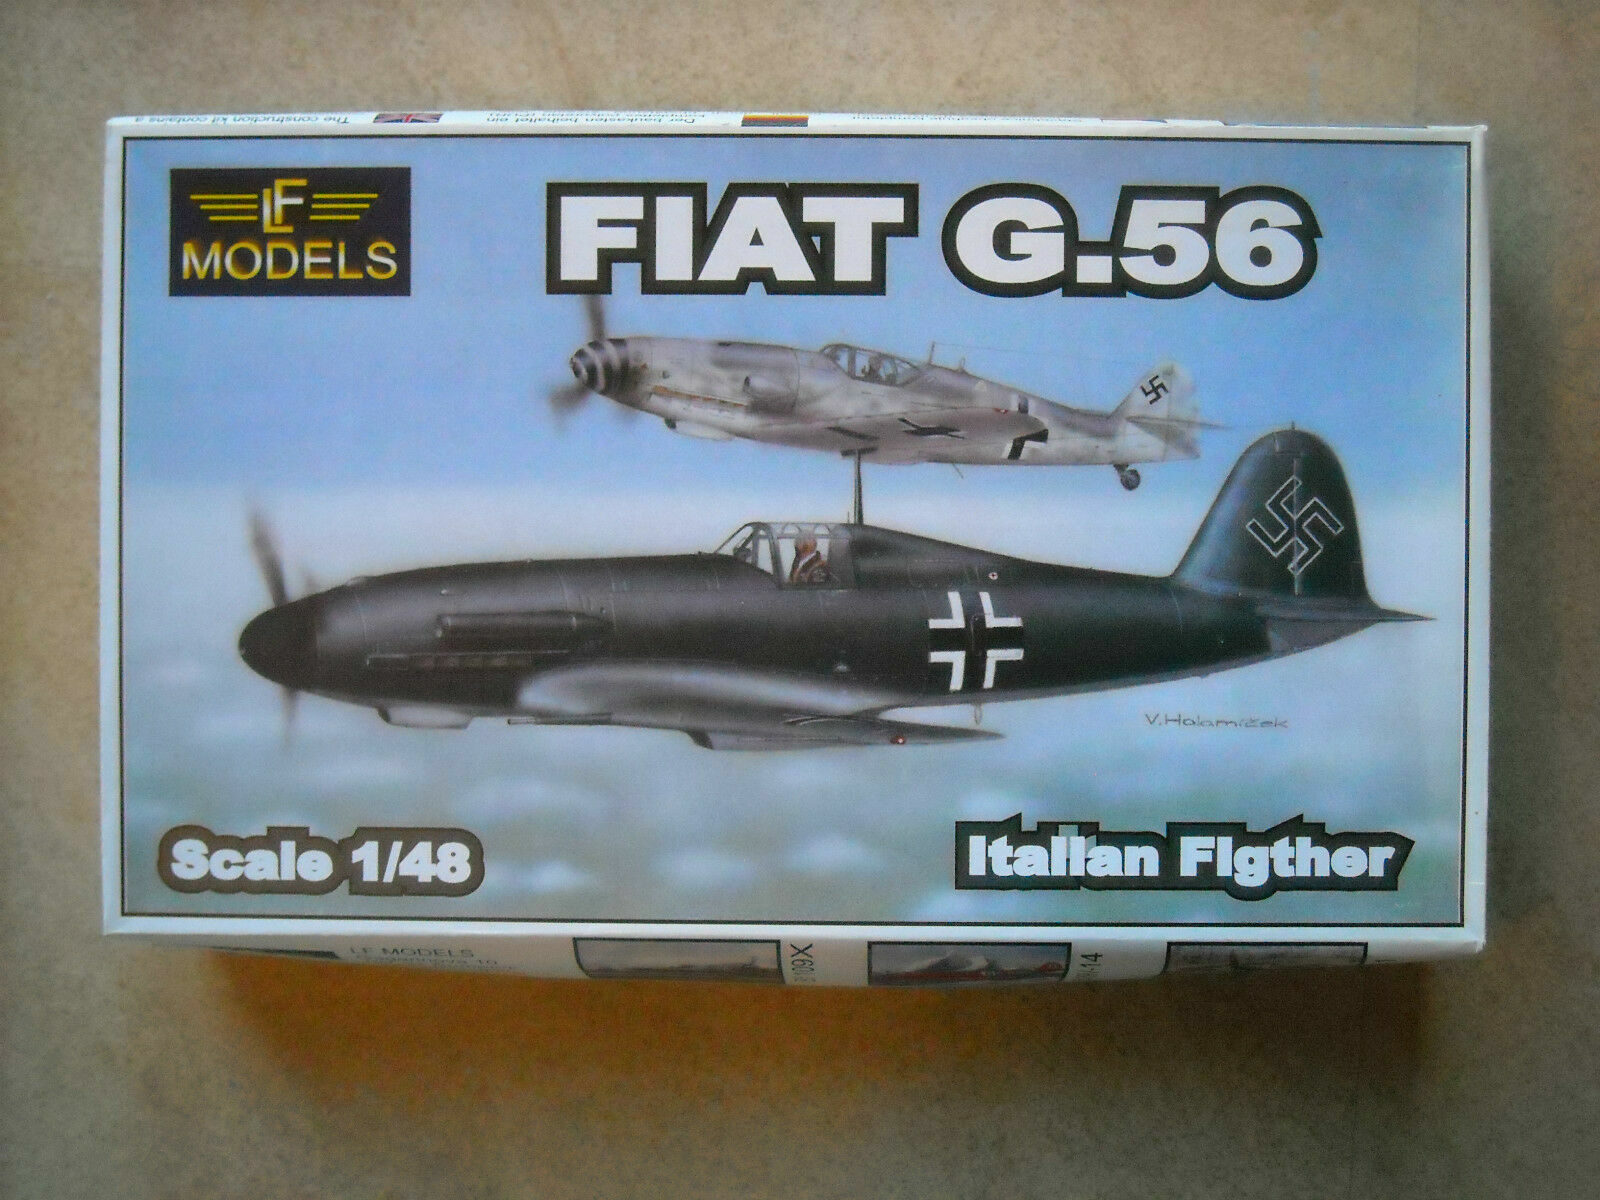 LFModels Fiat G 56 1/48 Luftwaffe Nuovo Resin Kit Kupowanie bomb, ograniczona wyprzedaż